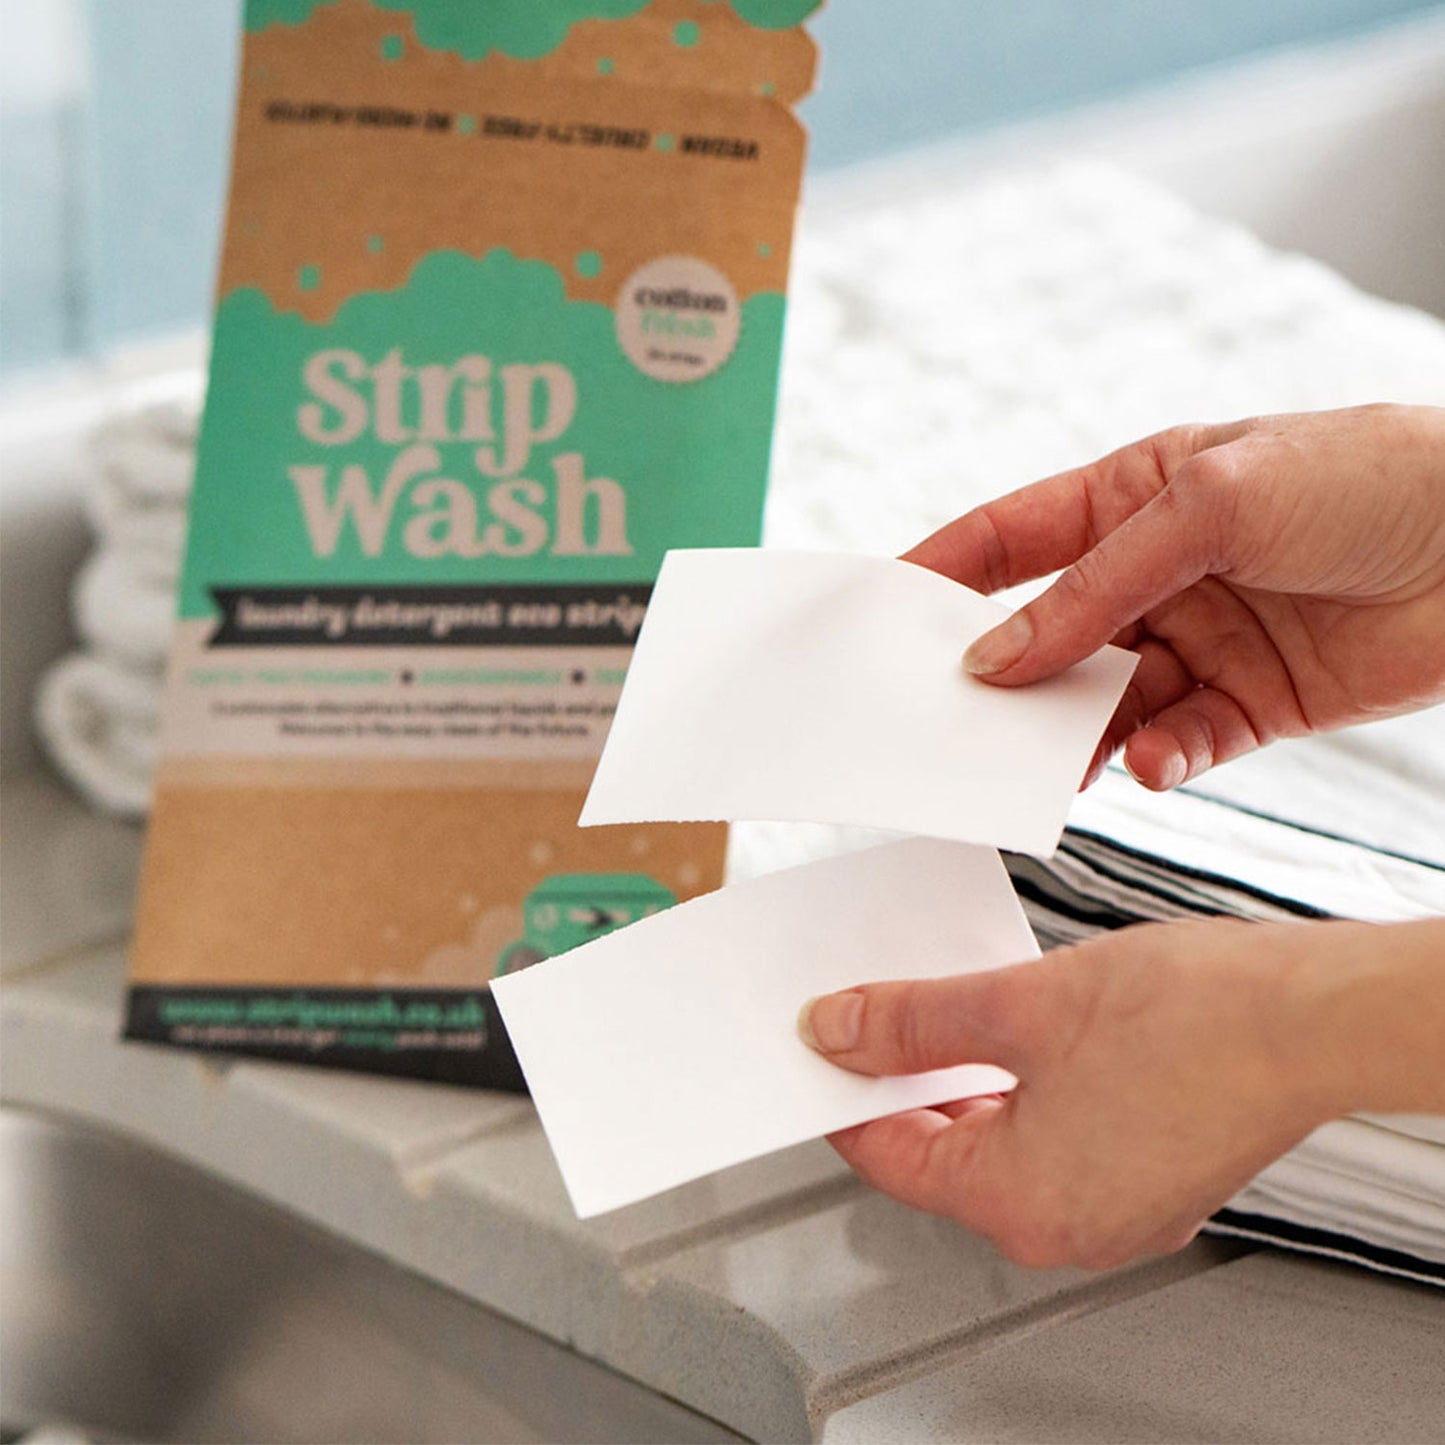 Strip Wash - Laundry Detergent Strips